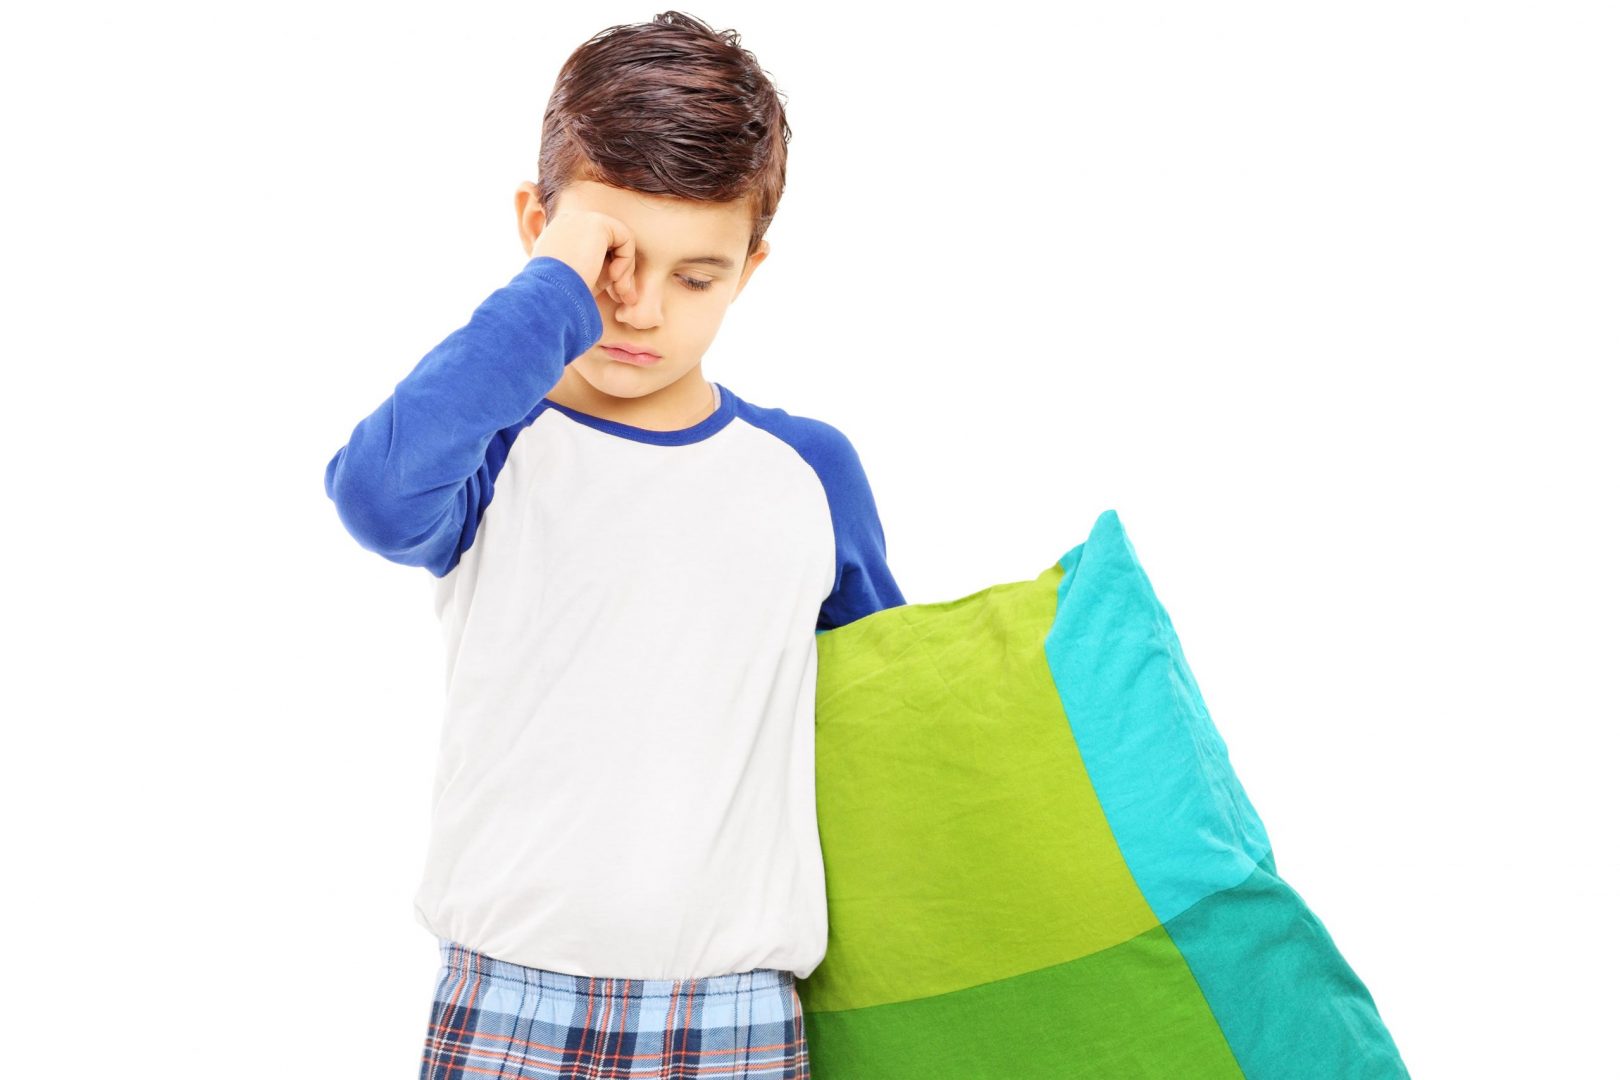 Pior qualidade do sono em crianças com enurese